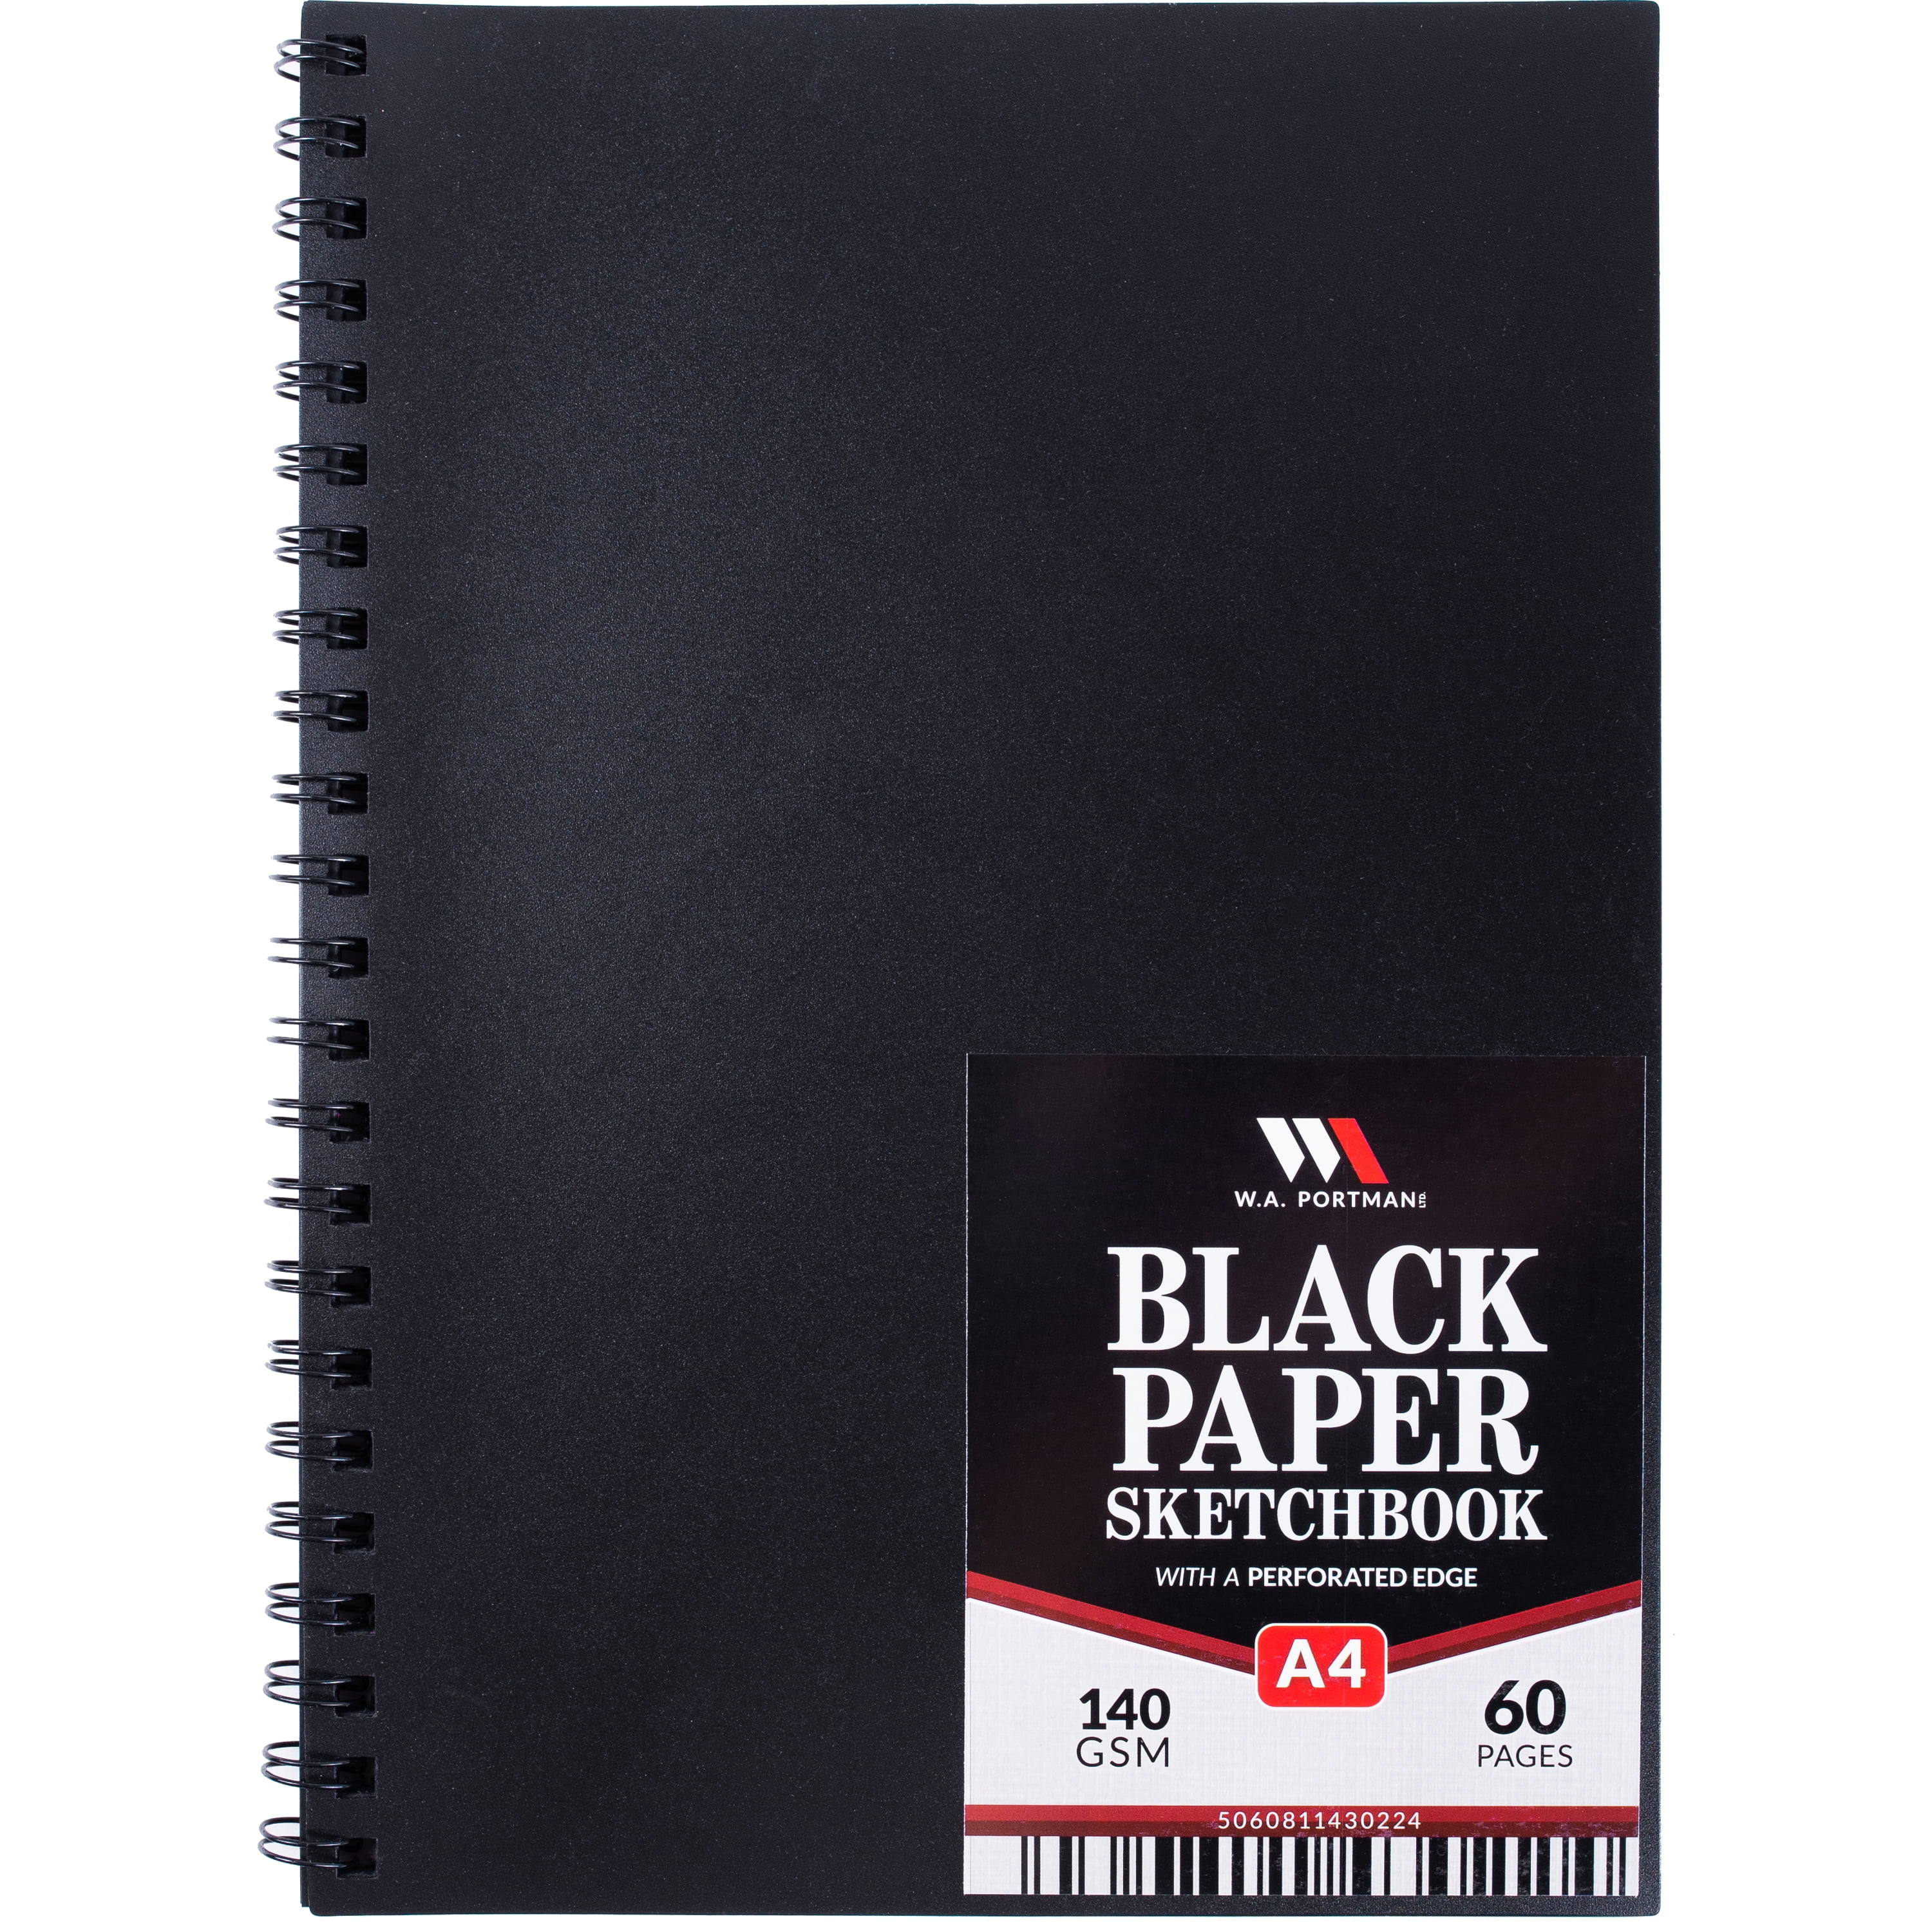 Drawing Black Paper Sketchbook, Sketchbook Drawing Markers